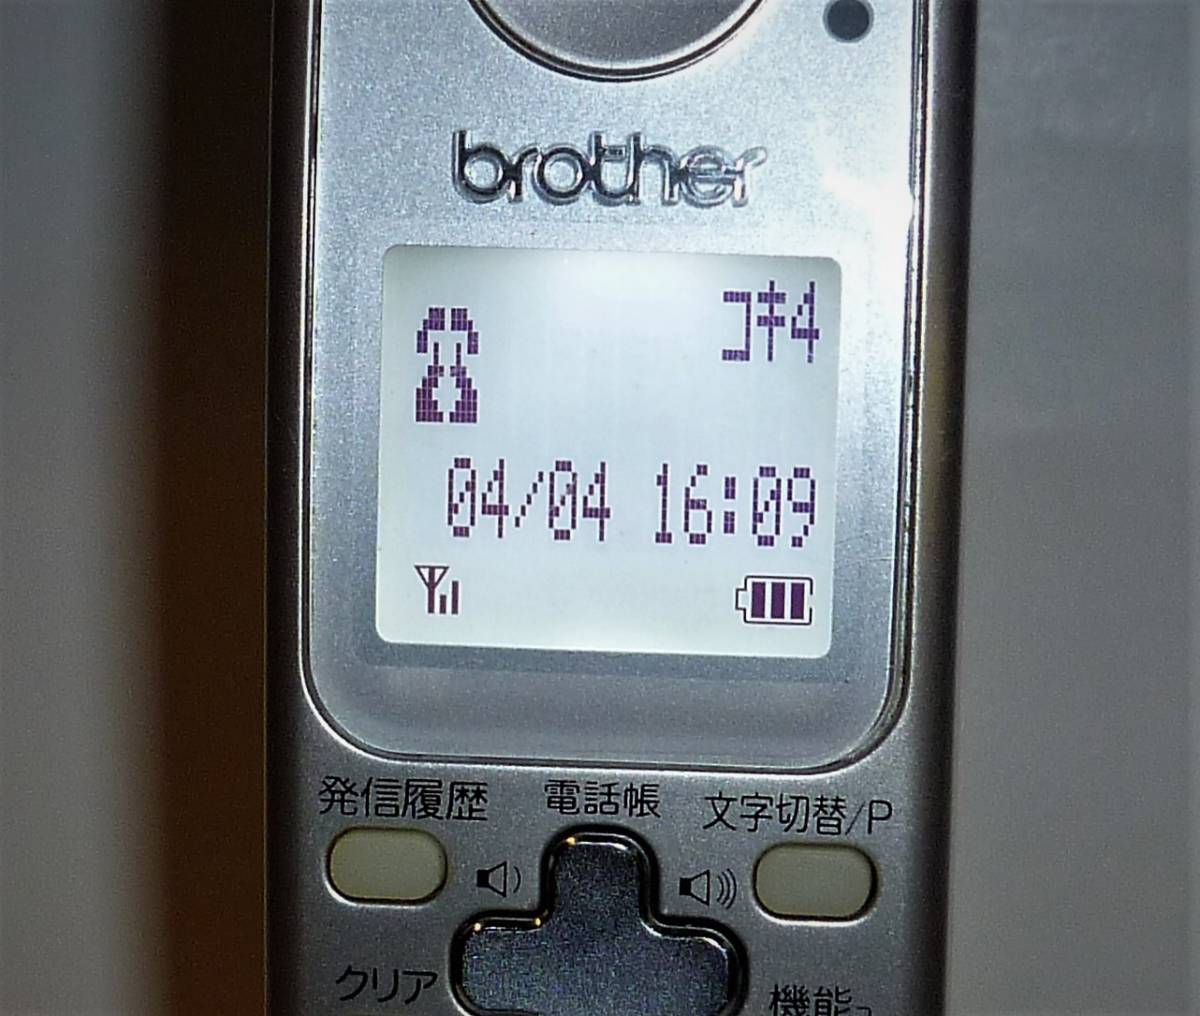 Brother Brother беспроводной FAX телефон расширение беспроводная телефонная трубка BCL-D30 KG оригинальный аккумулятор имеется подтверждение рабочего состояния товар 